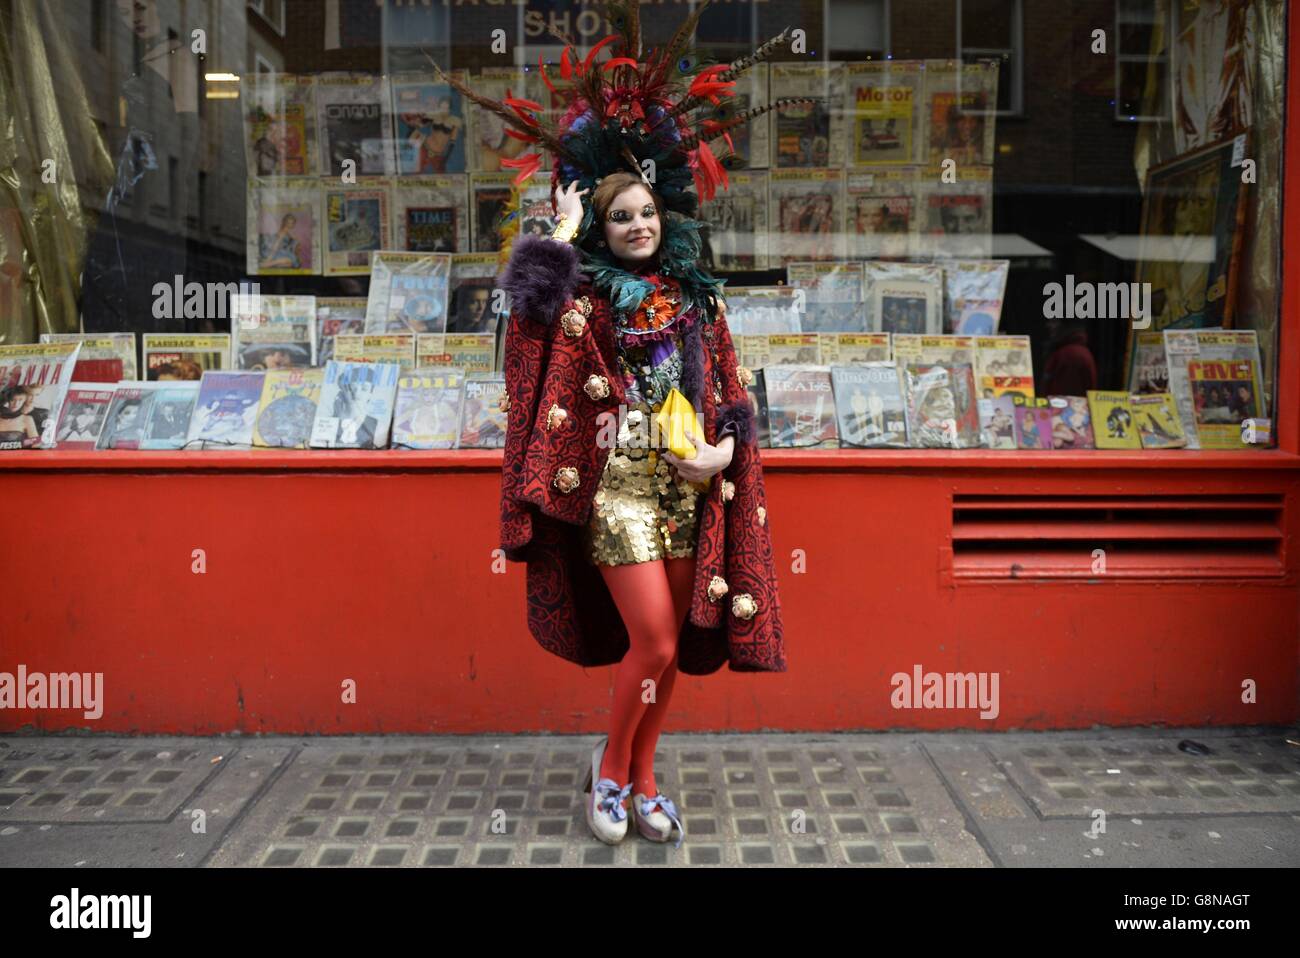 Un devoto de moda posará para una fotografía fuera de Brewer Street Carpark durante el espectáculo Otoño/ Invierno 2016 London Fashion Week en el BFC Show Space, Londres. Foto de stock